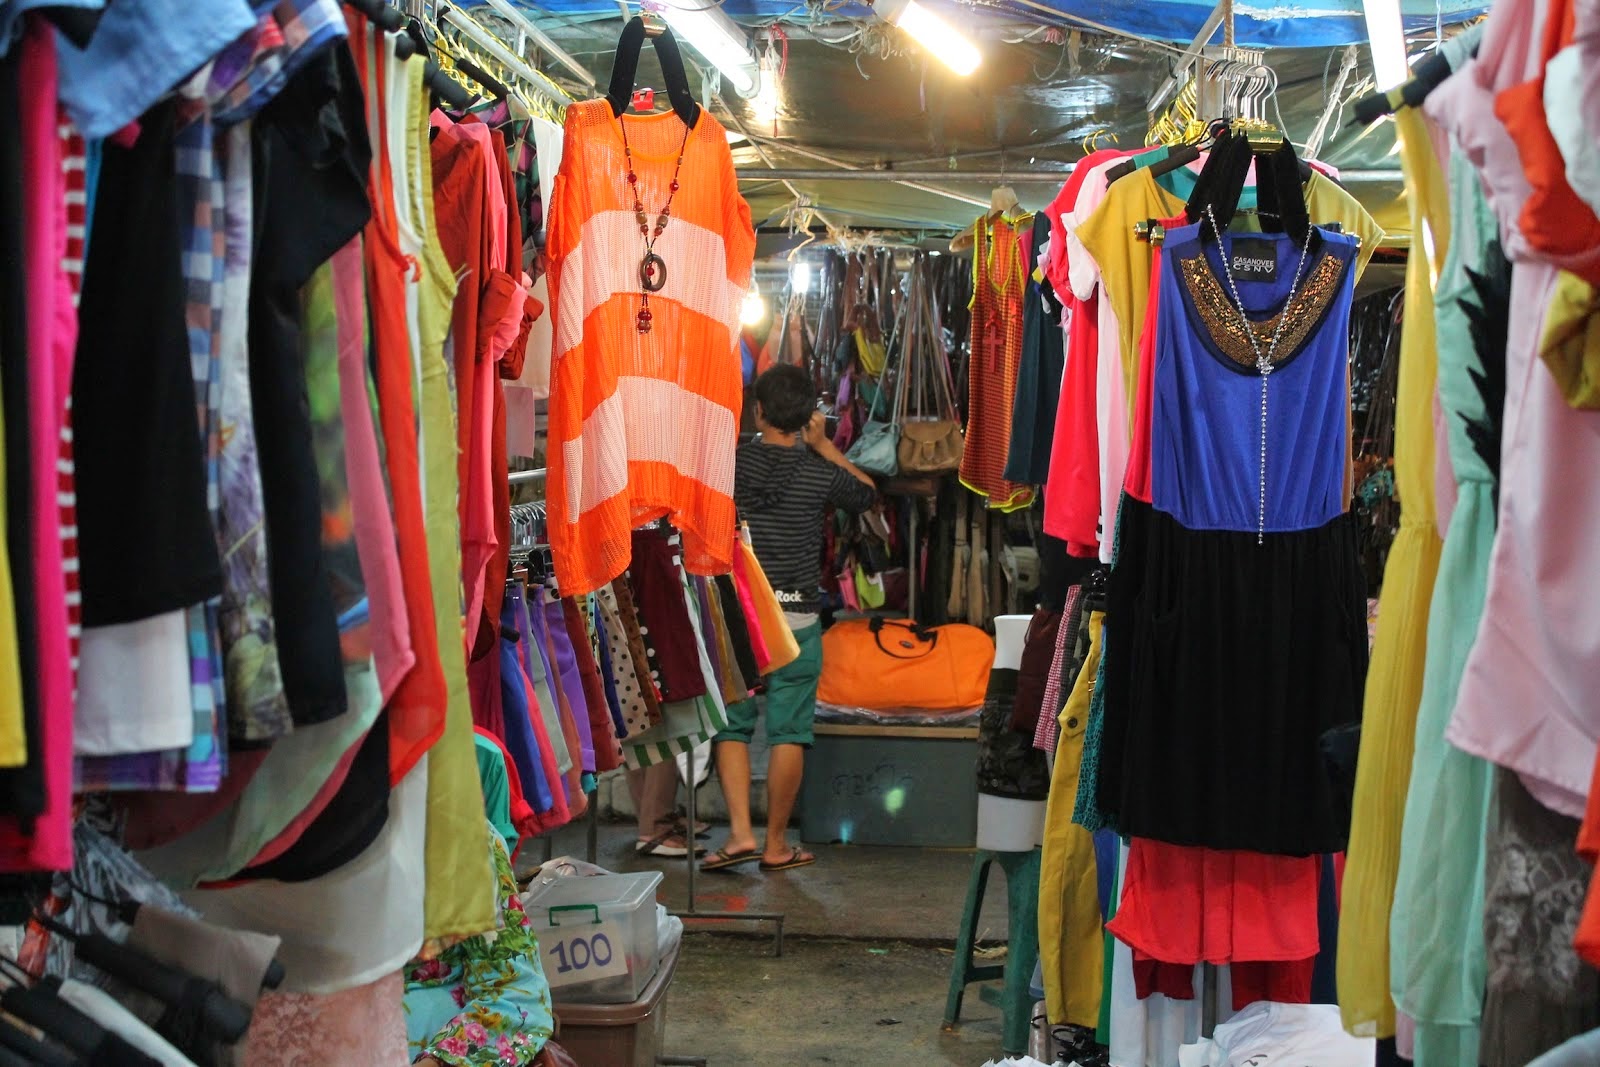  Grosir Baju Korea Di Tanah Abang  Pasar Grosir  Tanah  